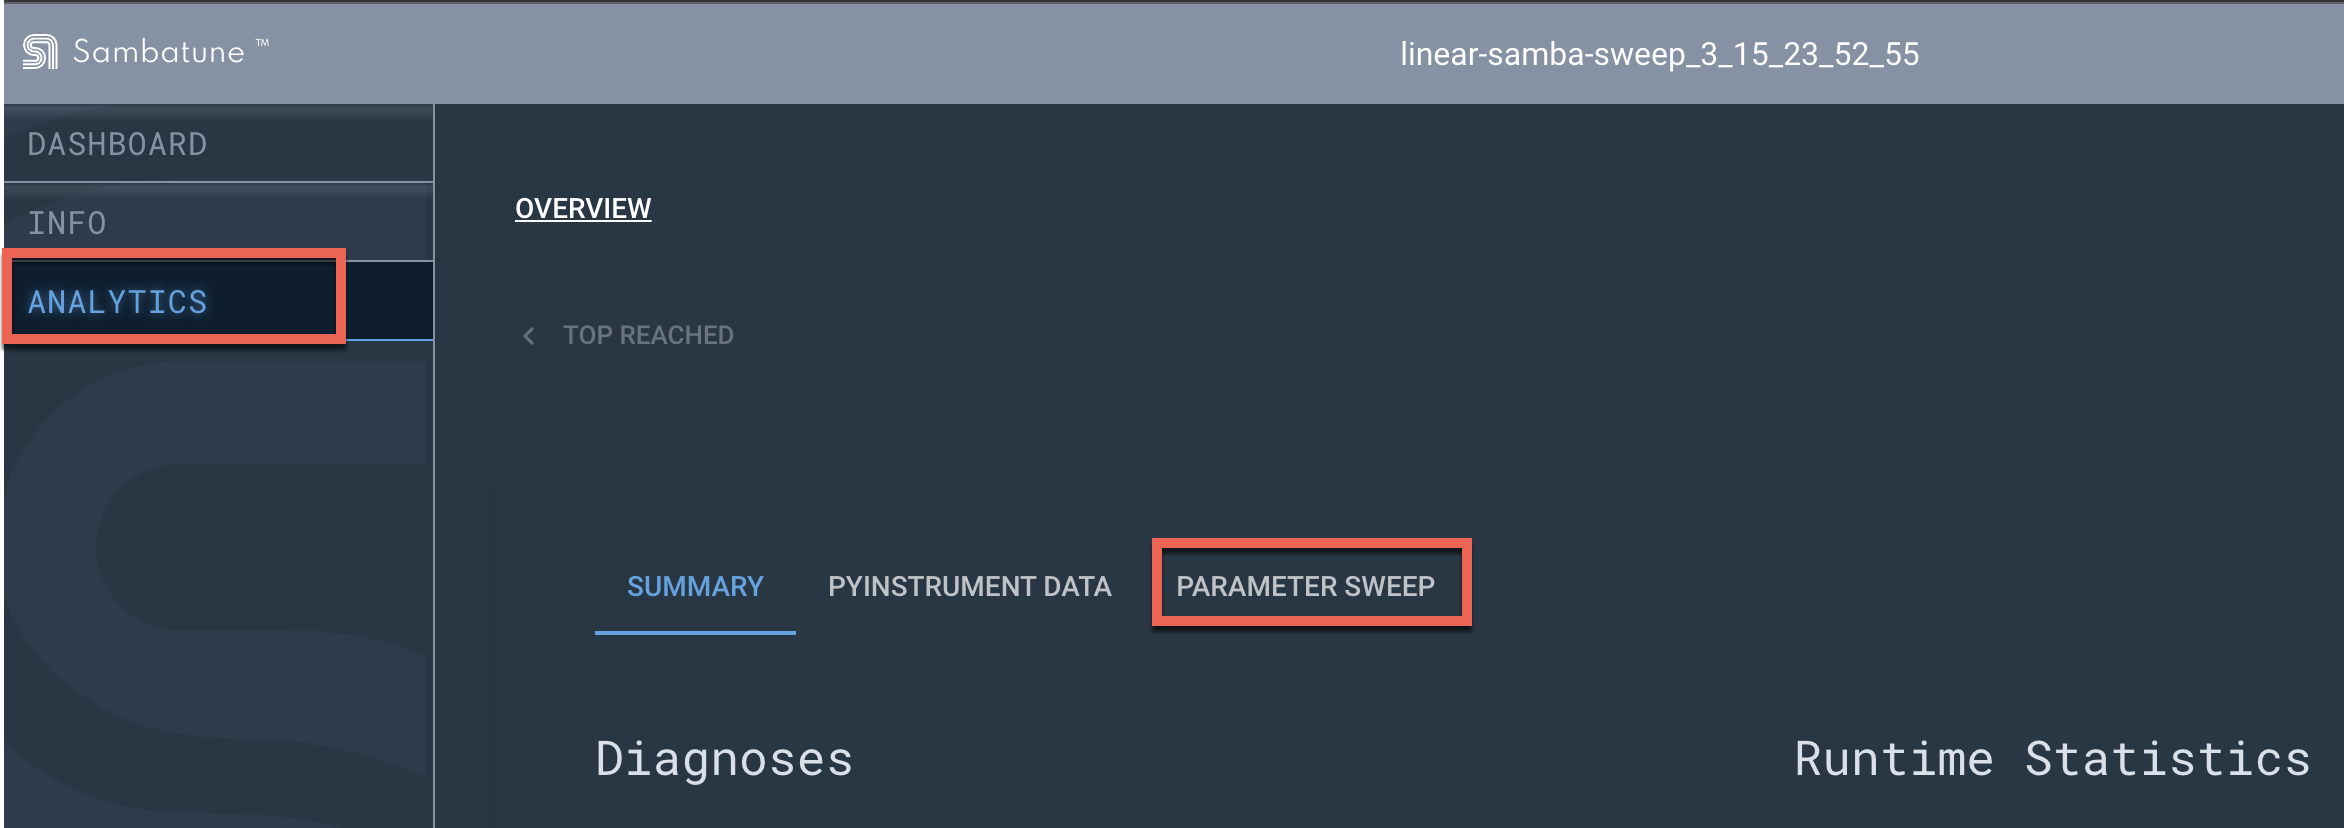 parameter sweep tab